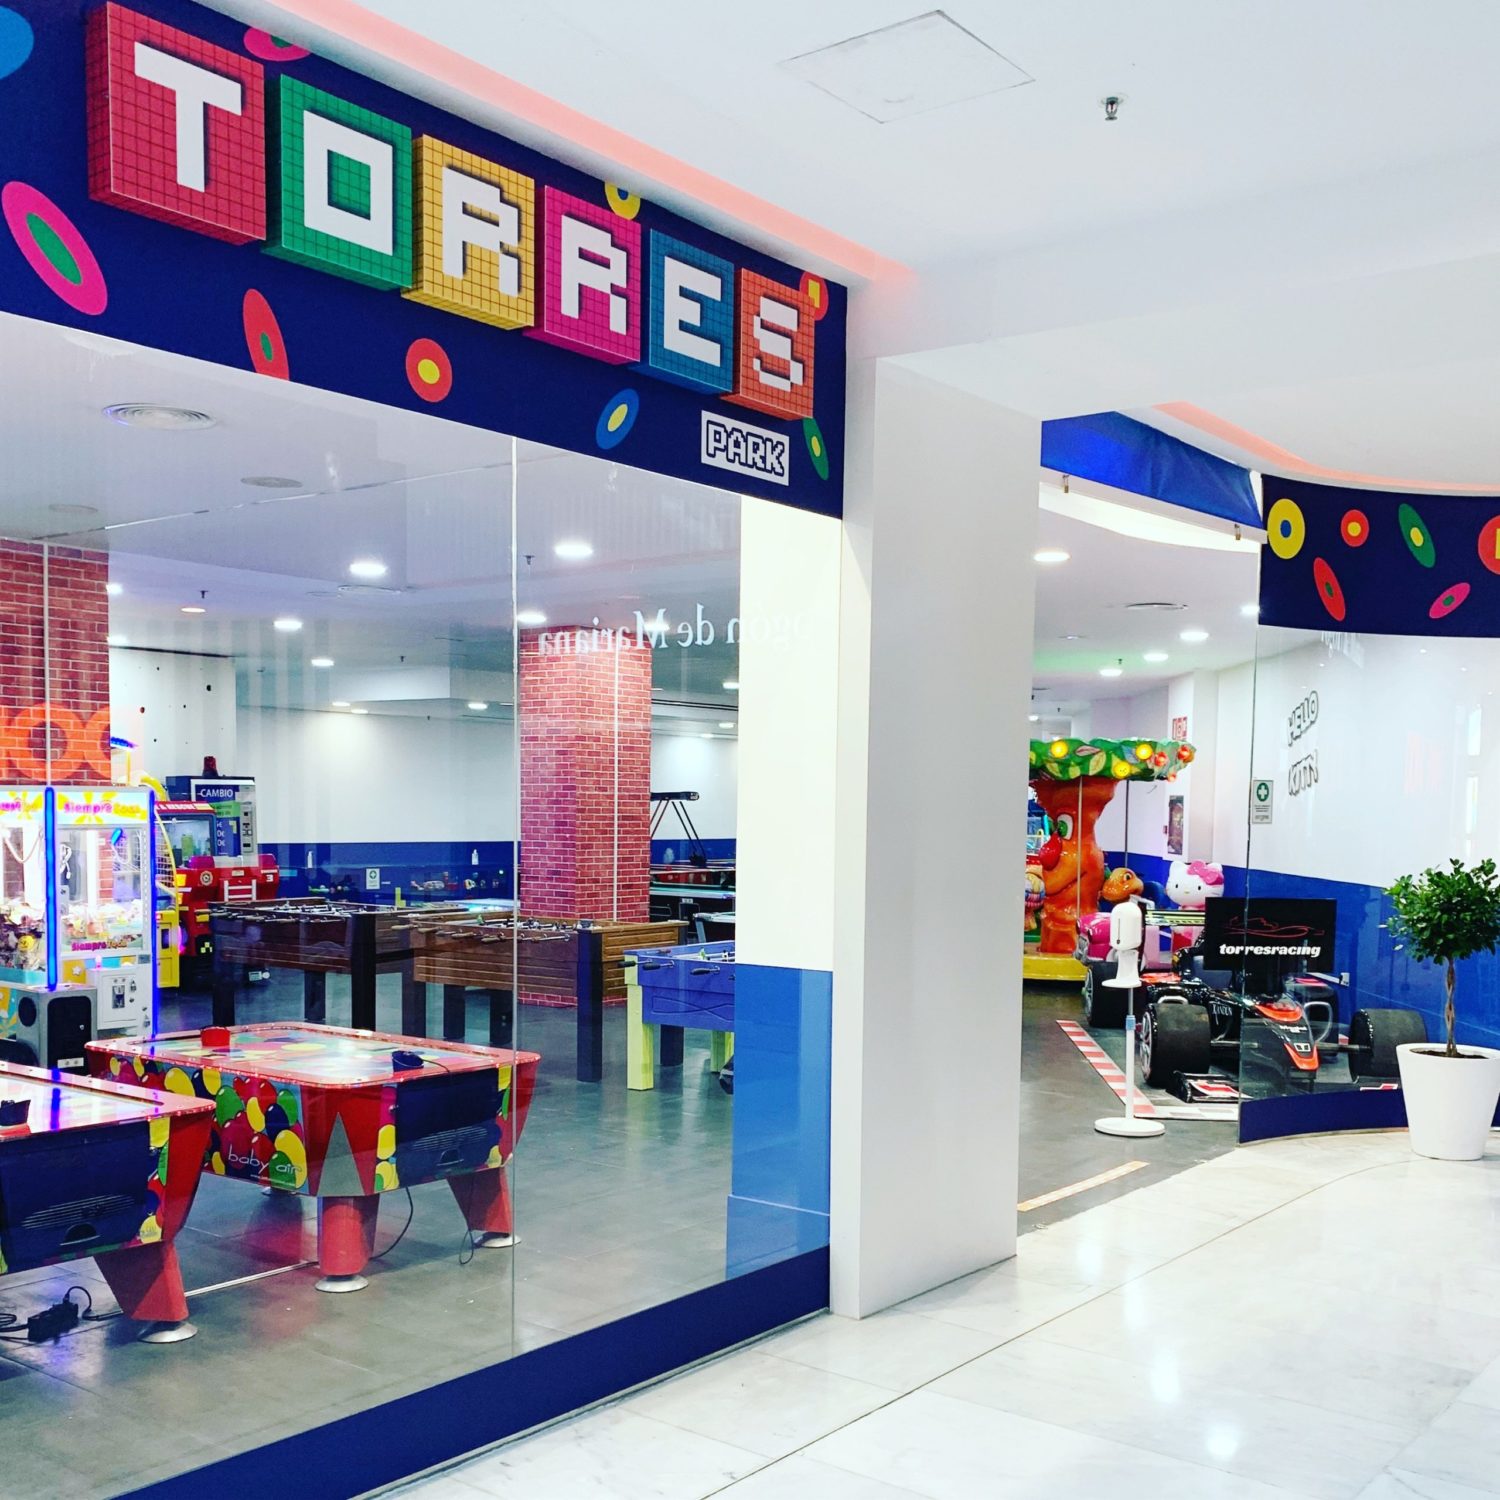 Bahía Sur estrena nuevo espacio de ocio infantil y juvenil: Torres Park - Just Retail